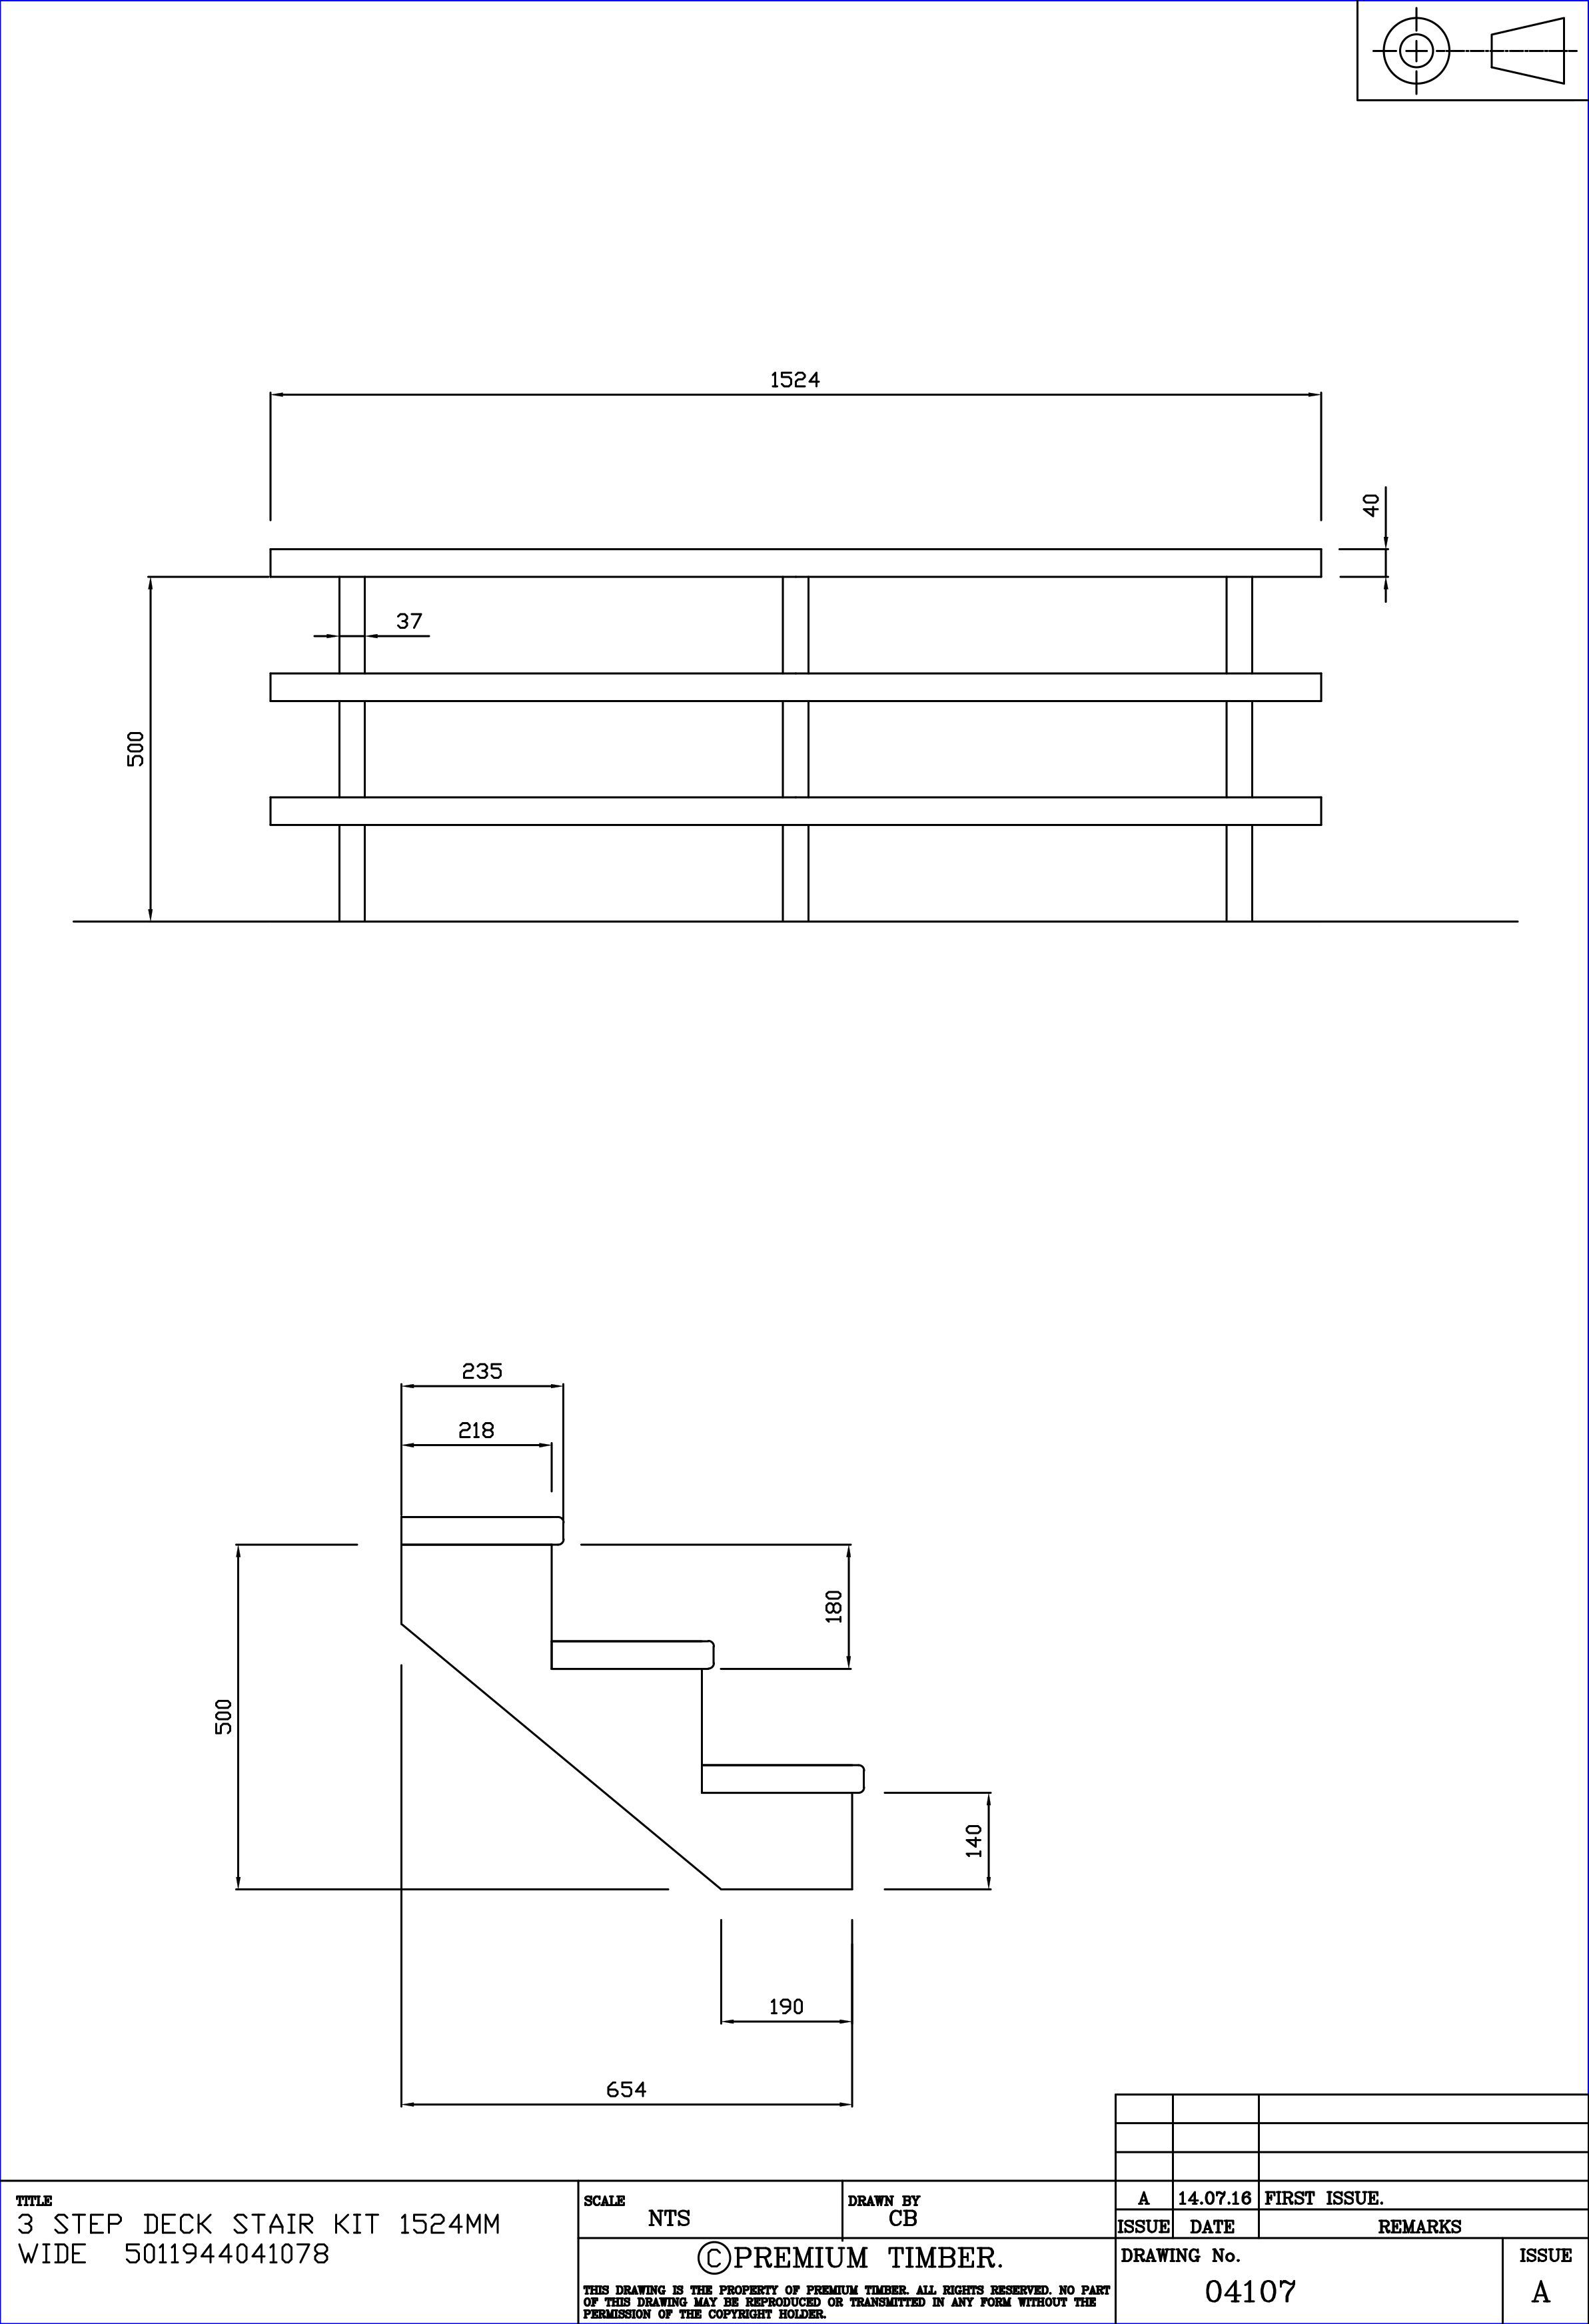 Spruce Decking stair kit